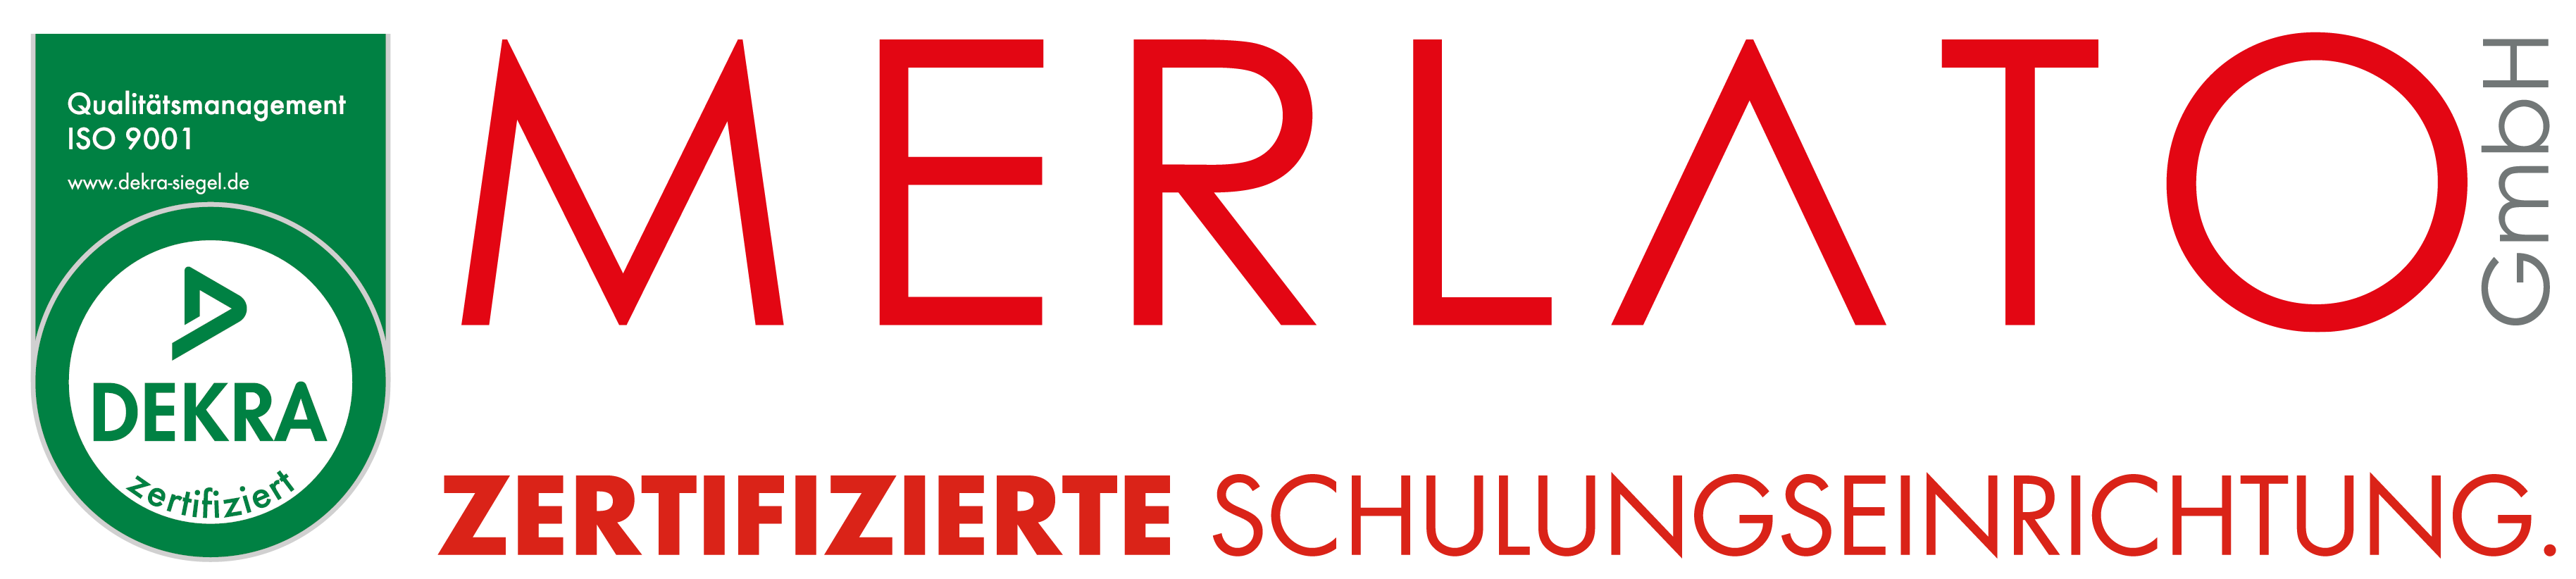 Merlato_Logo-mit-zertifiezierte_DEKRA